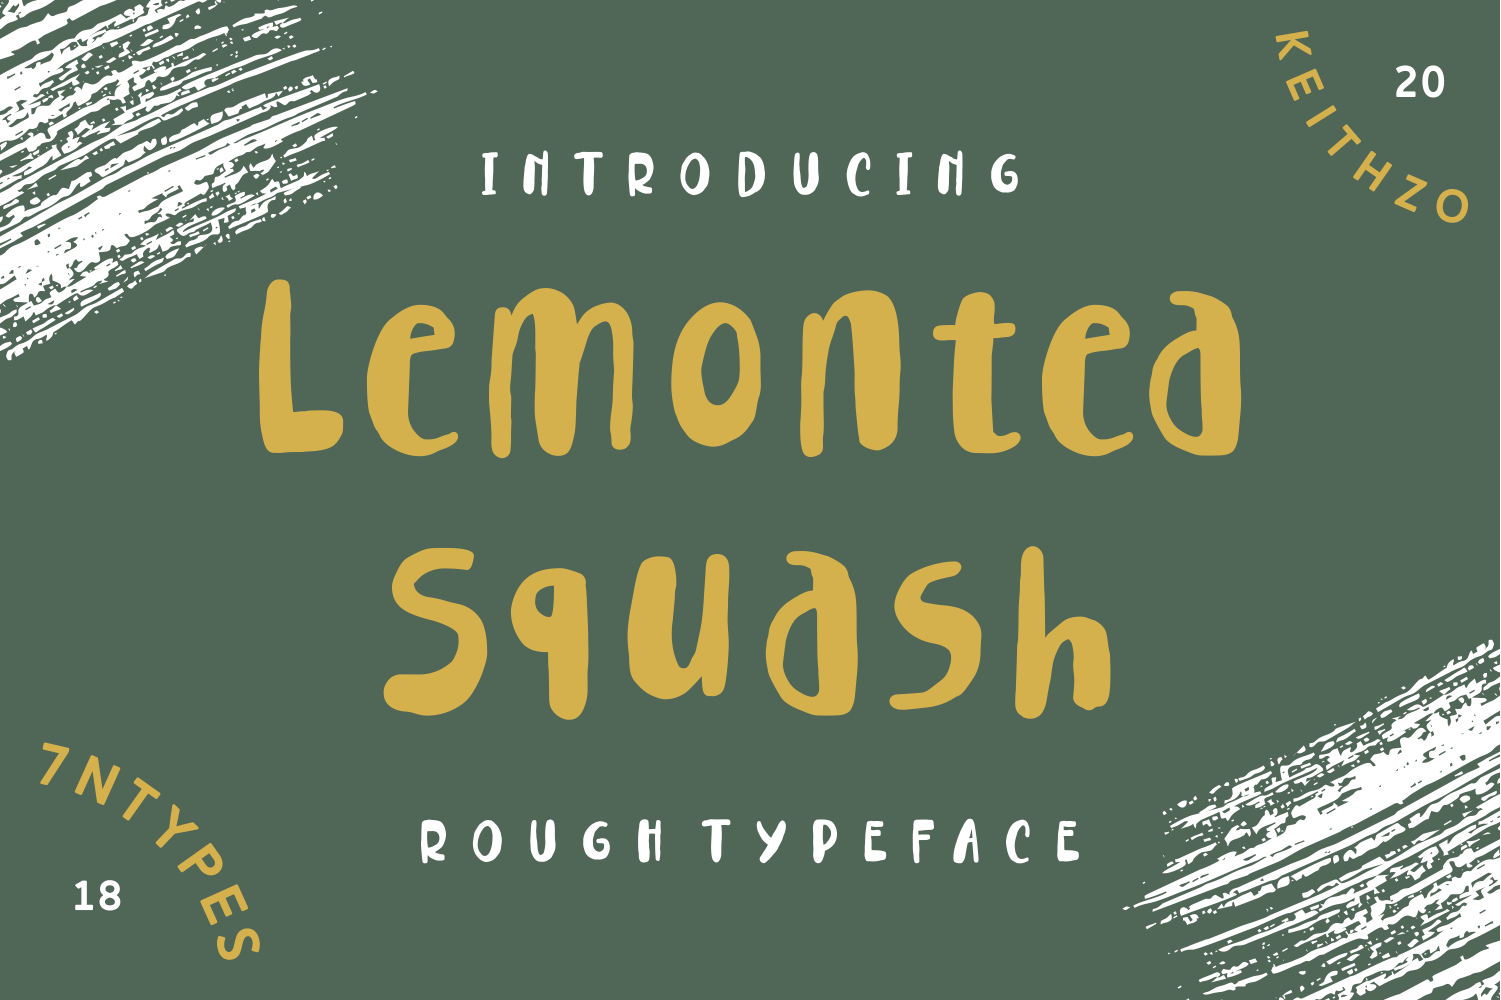 Lemontea Squash